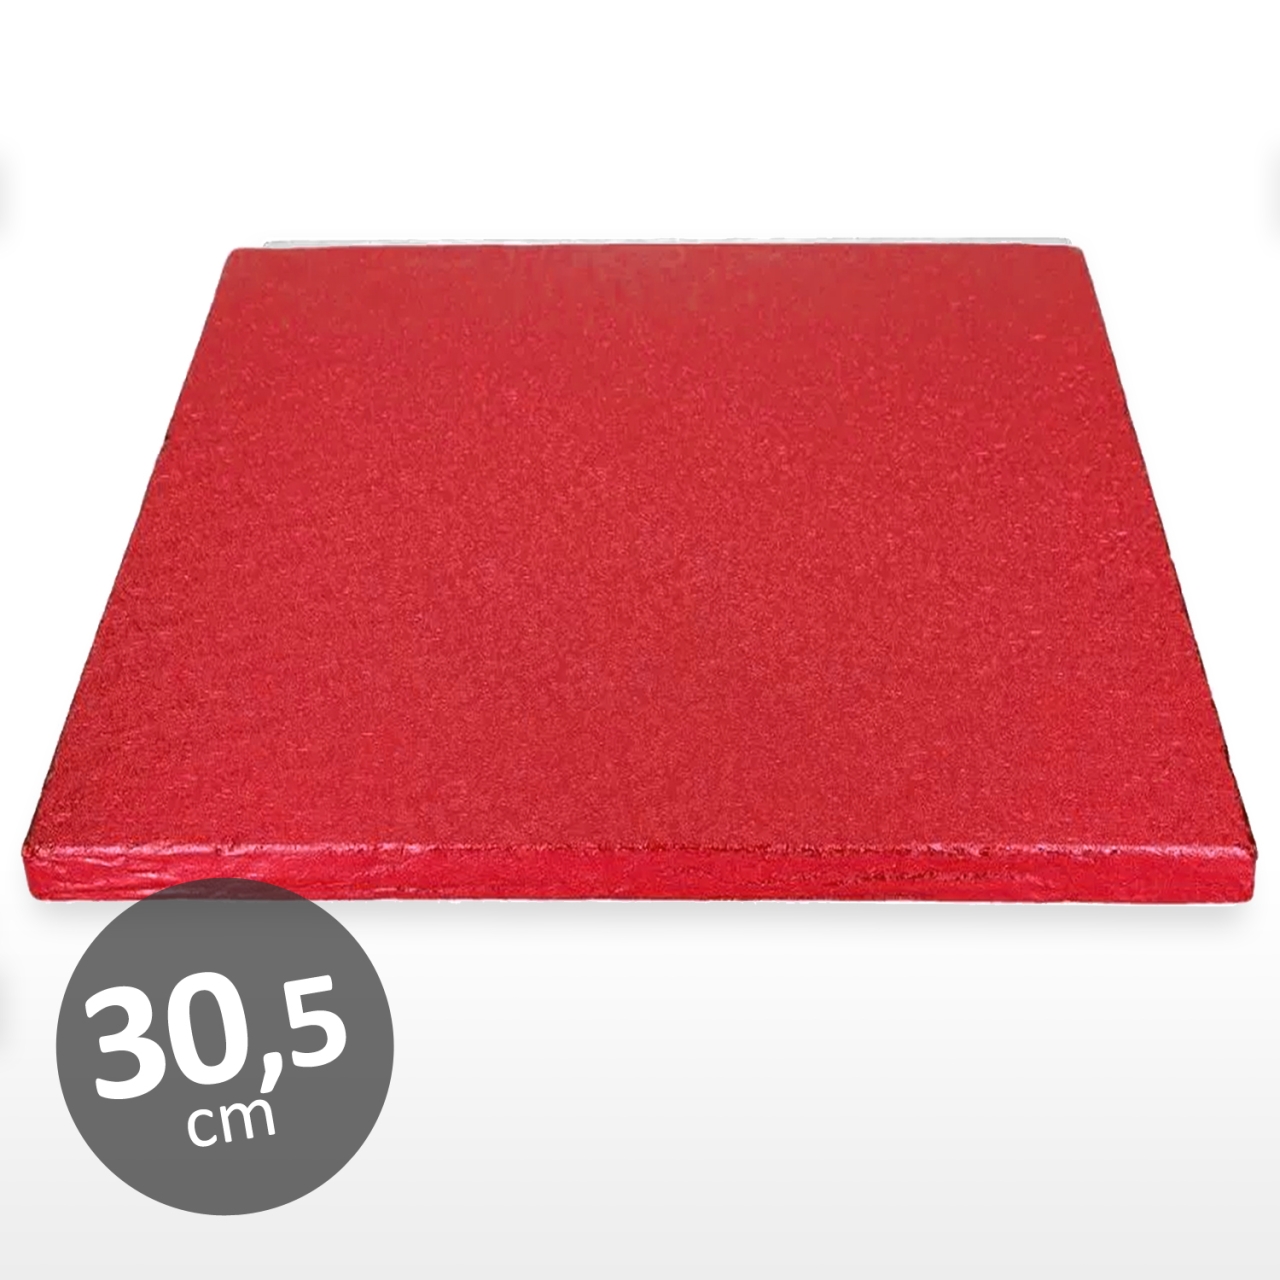 Cake Board quadratisch 30 cm rot